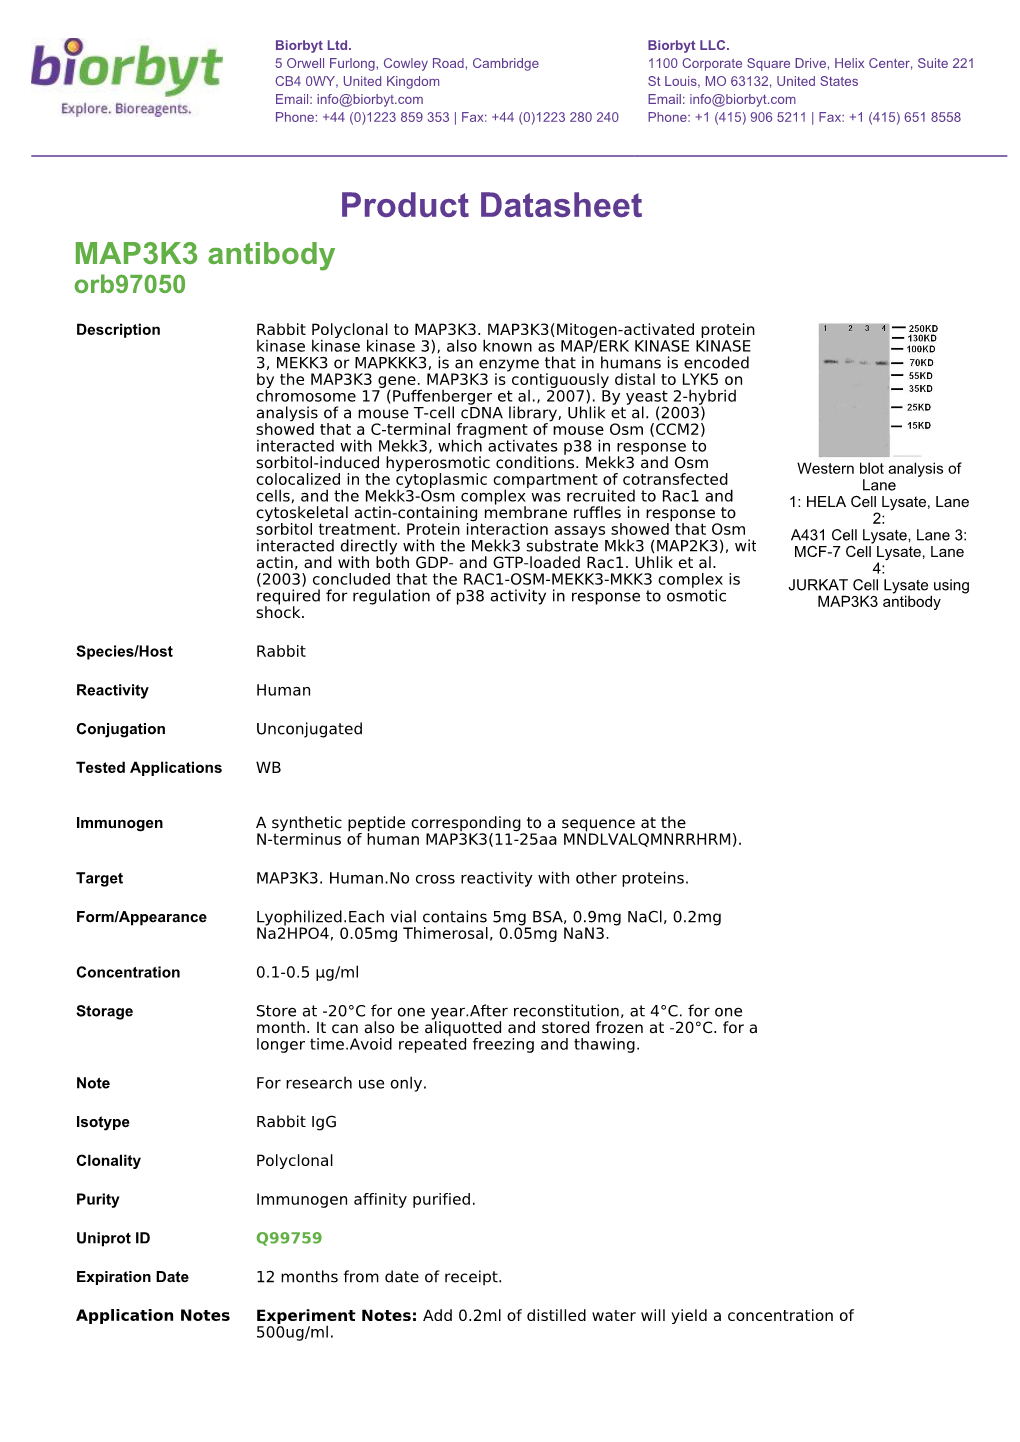 Product Datasheet MAP3K3 Antibody Orb97050